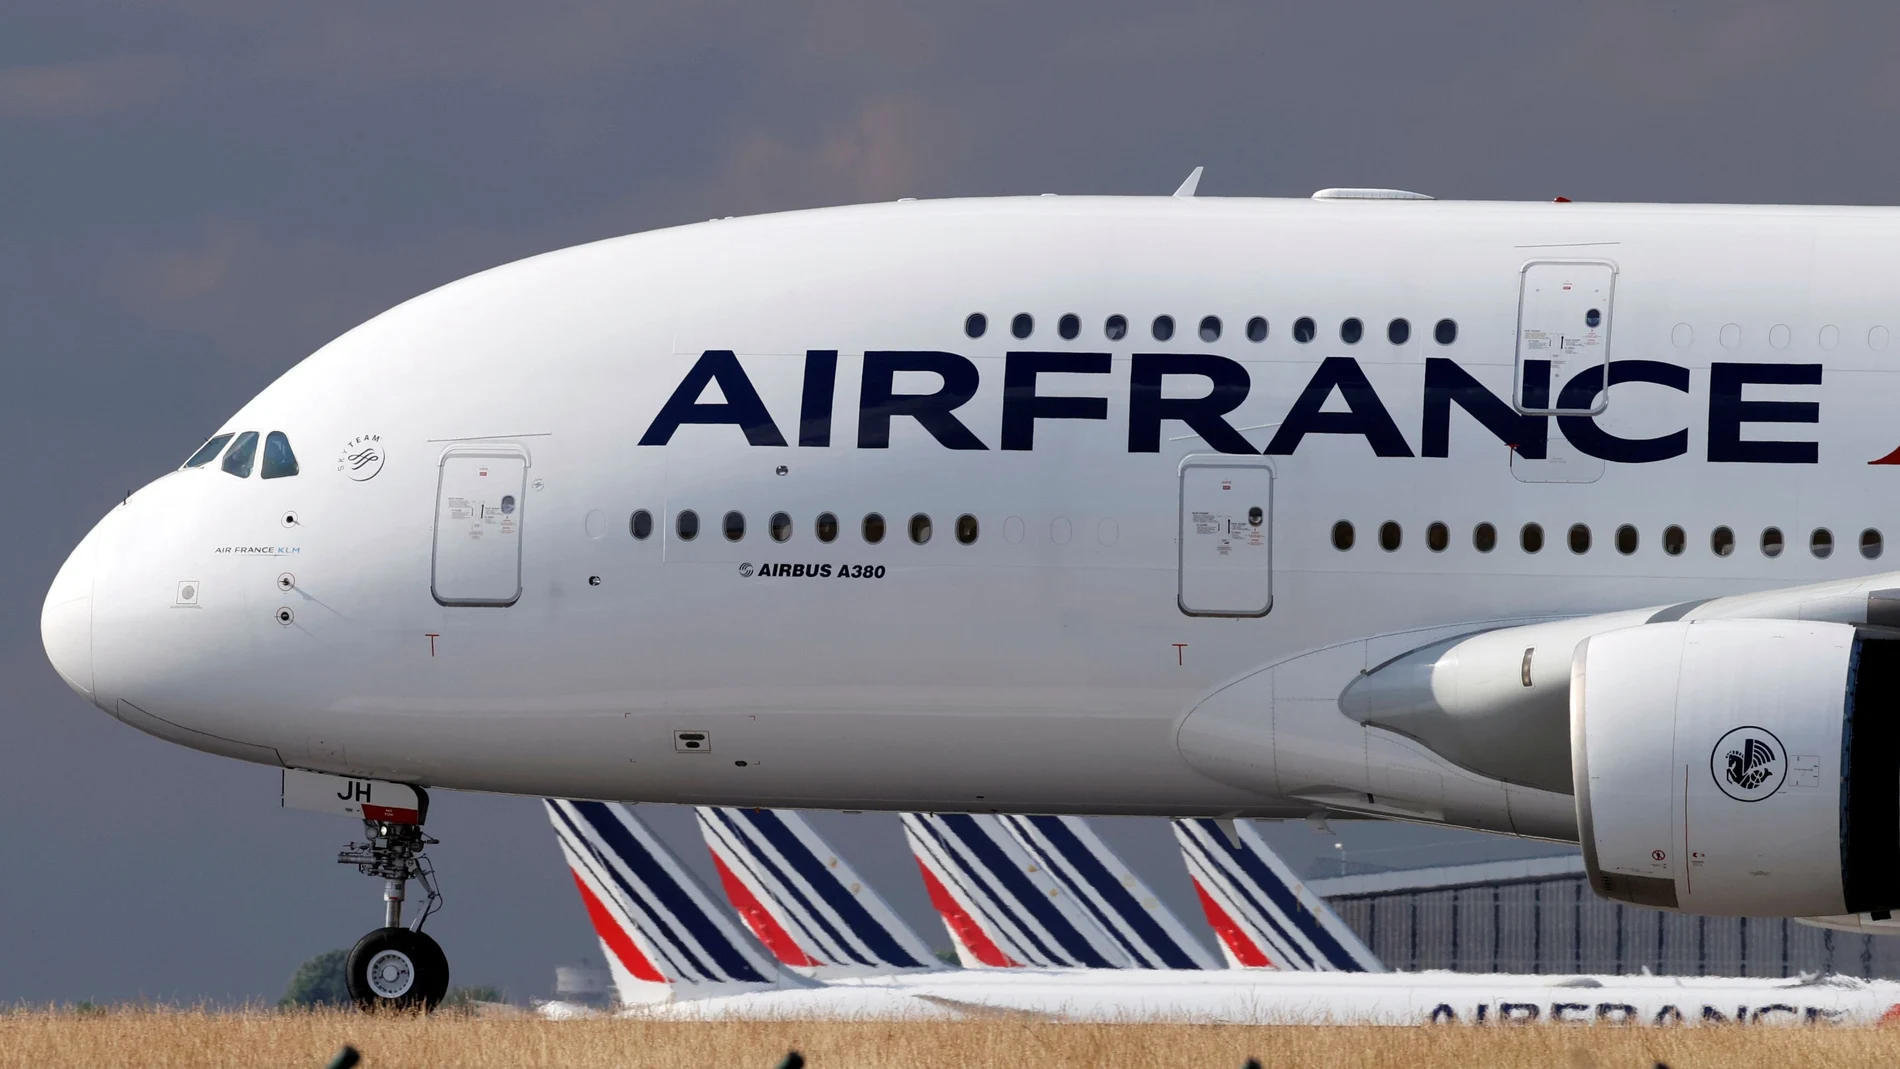 Un Airbus A380, el avión de pasajeros más grande del mundo, de la compañía francesa Air France